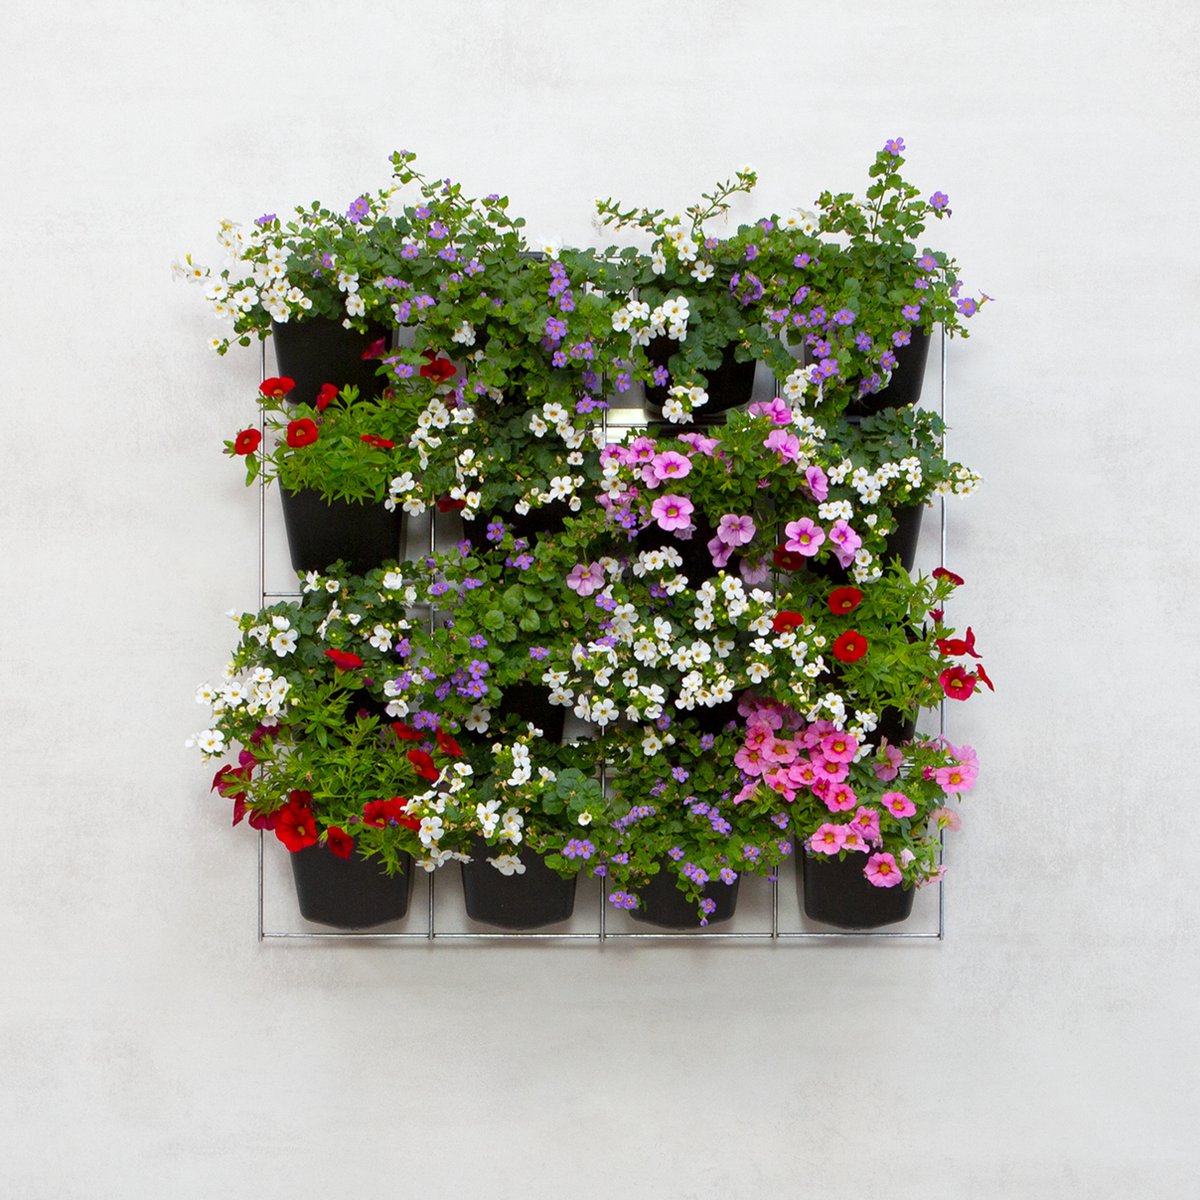 Mijn Verticale Tuin - Voor Buiten - Compleet Startpakket (Medium) 60cm x 60cm - 16 Bakjes - Plantenbak aan de muur - Groene wand - Groene muur - Moestuin - Balkonbak - Plantenmuur